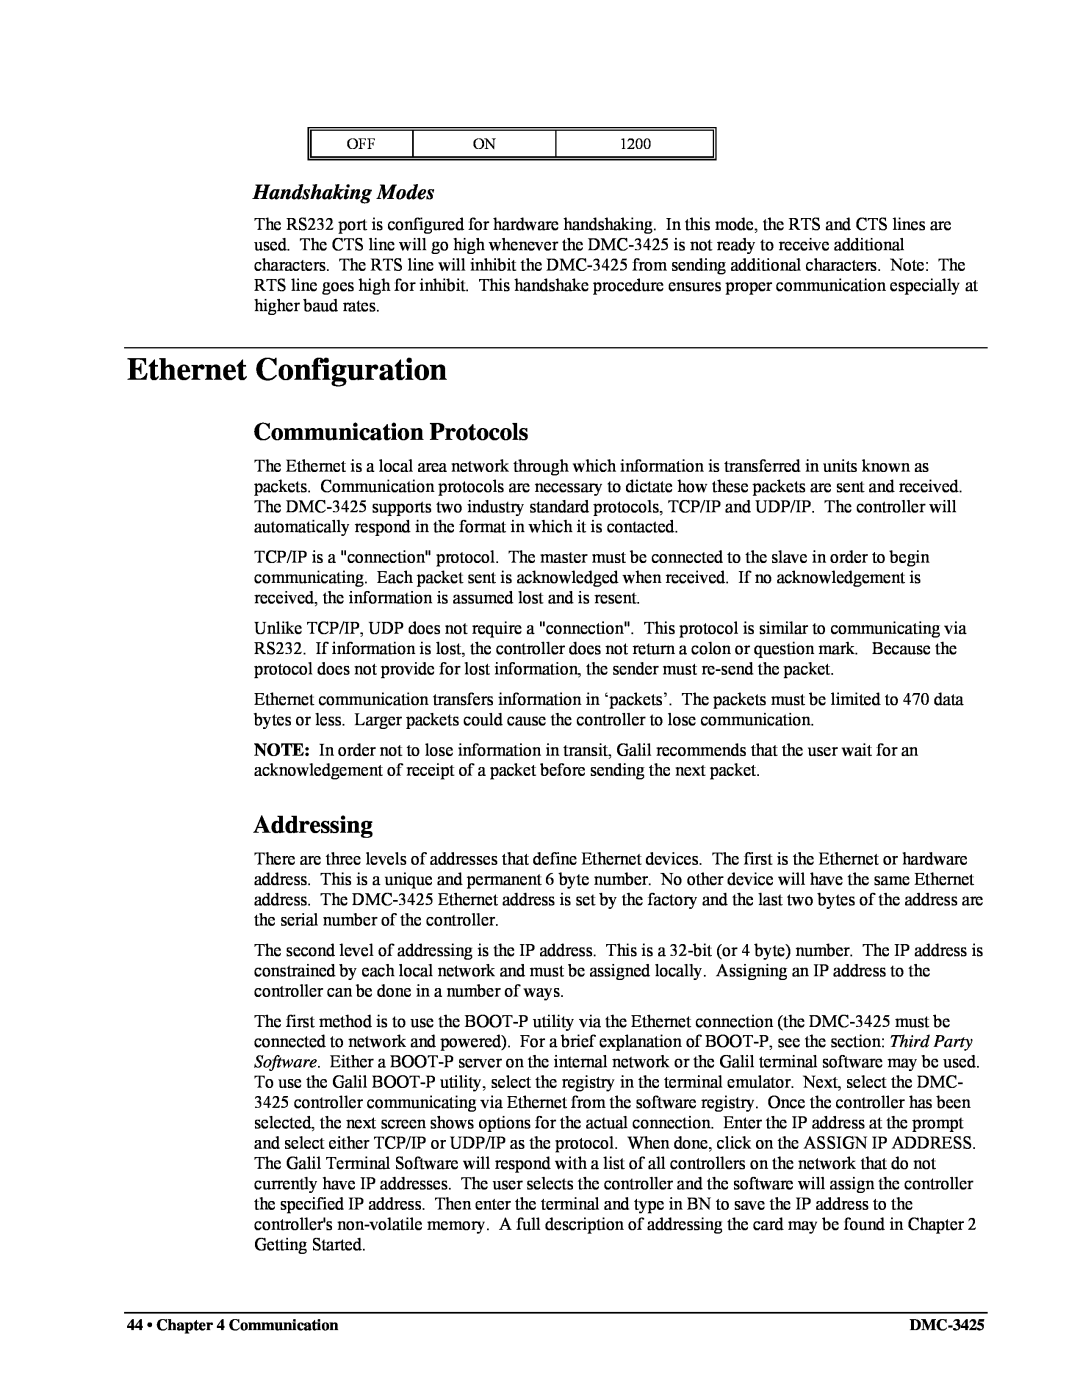 Galil DMC-3425 user manual Ethernet Configuration, Communication Protocols, Addressing, Handshaking Modes 